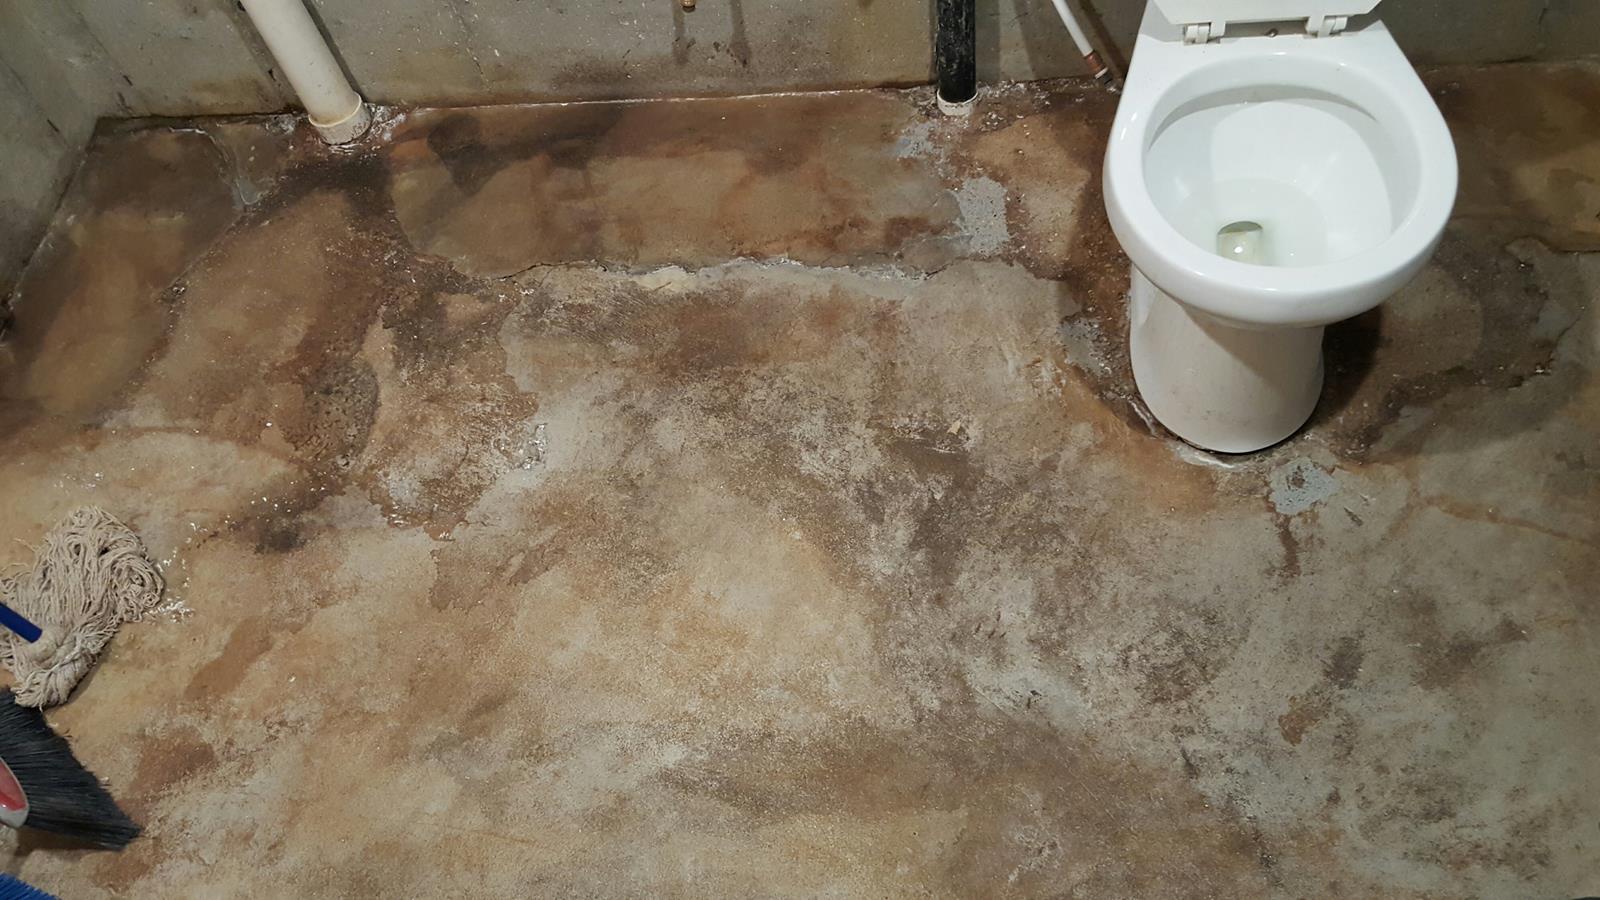 Badly damaged concrete bathroom floor